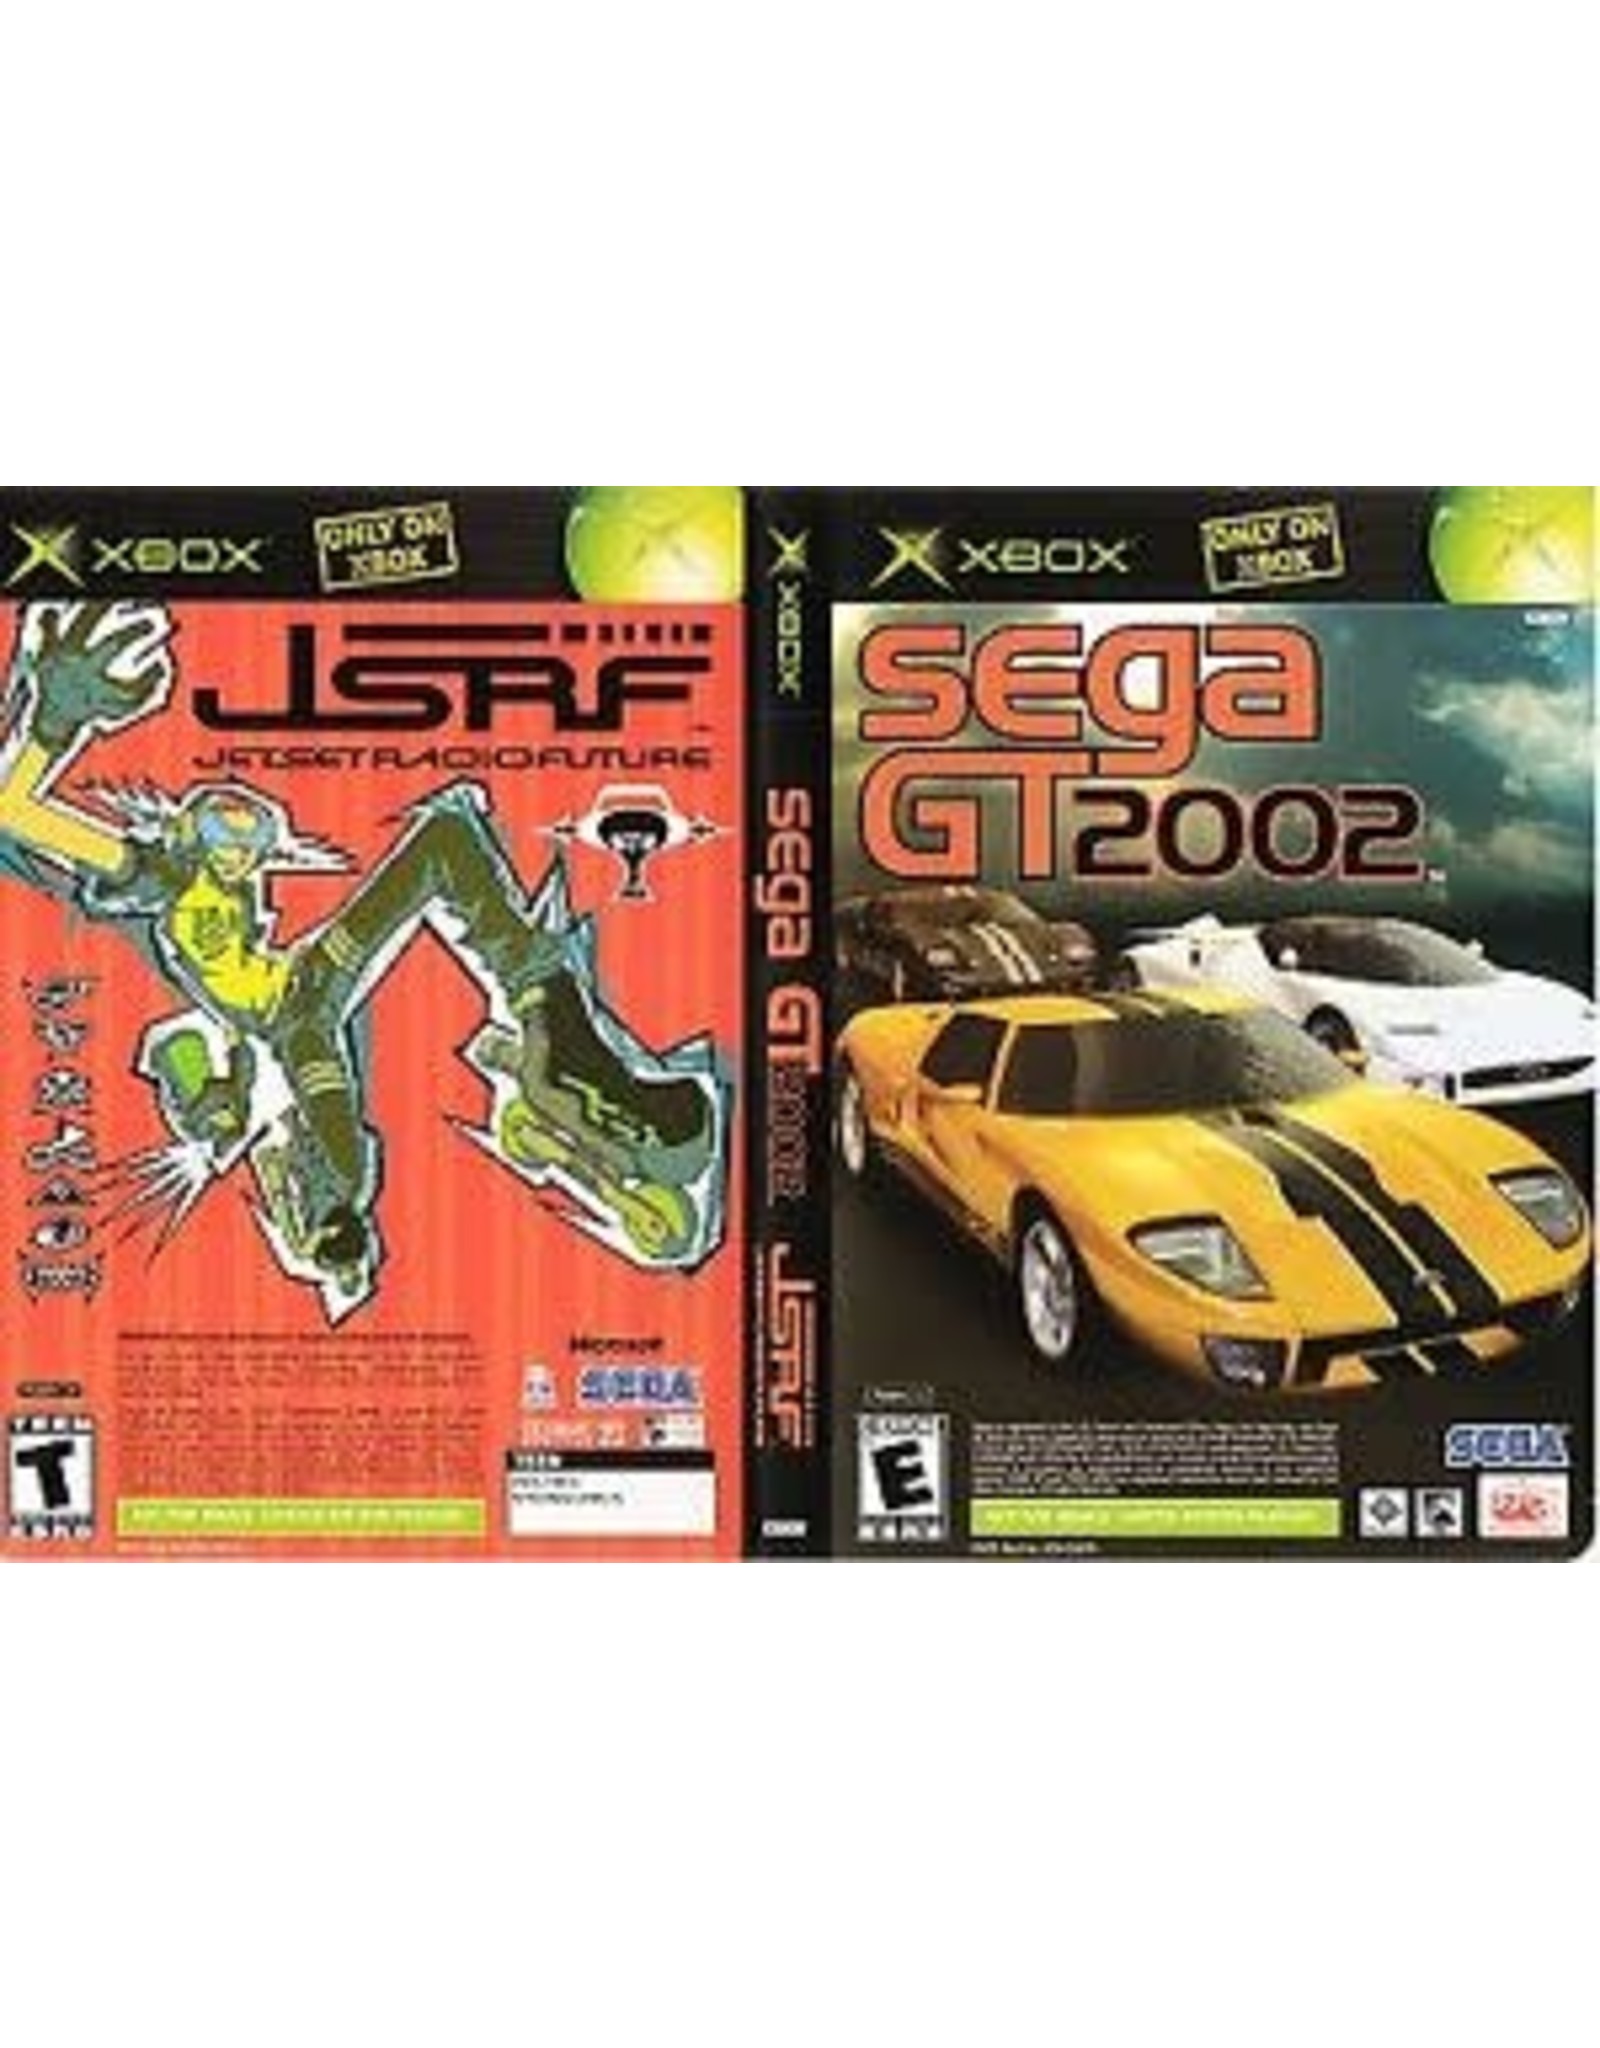 Xbox Sega GT 2002 JSRF Combo (Used)